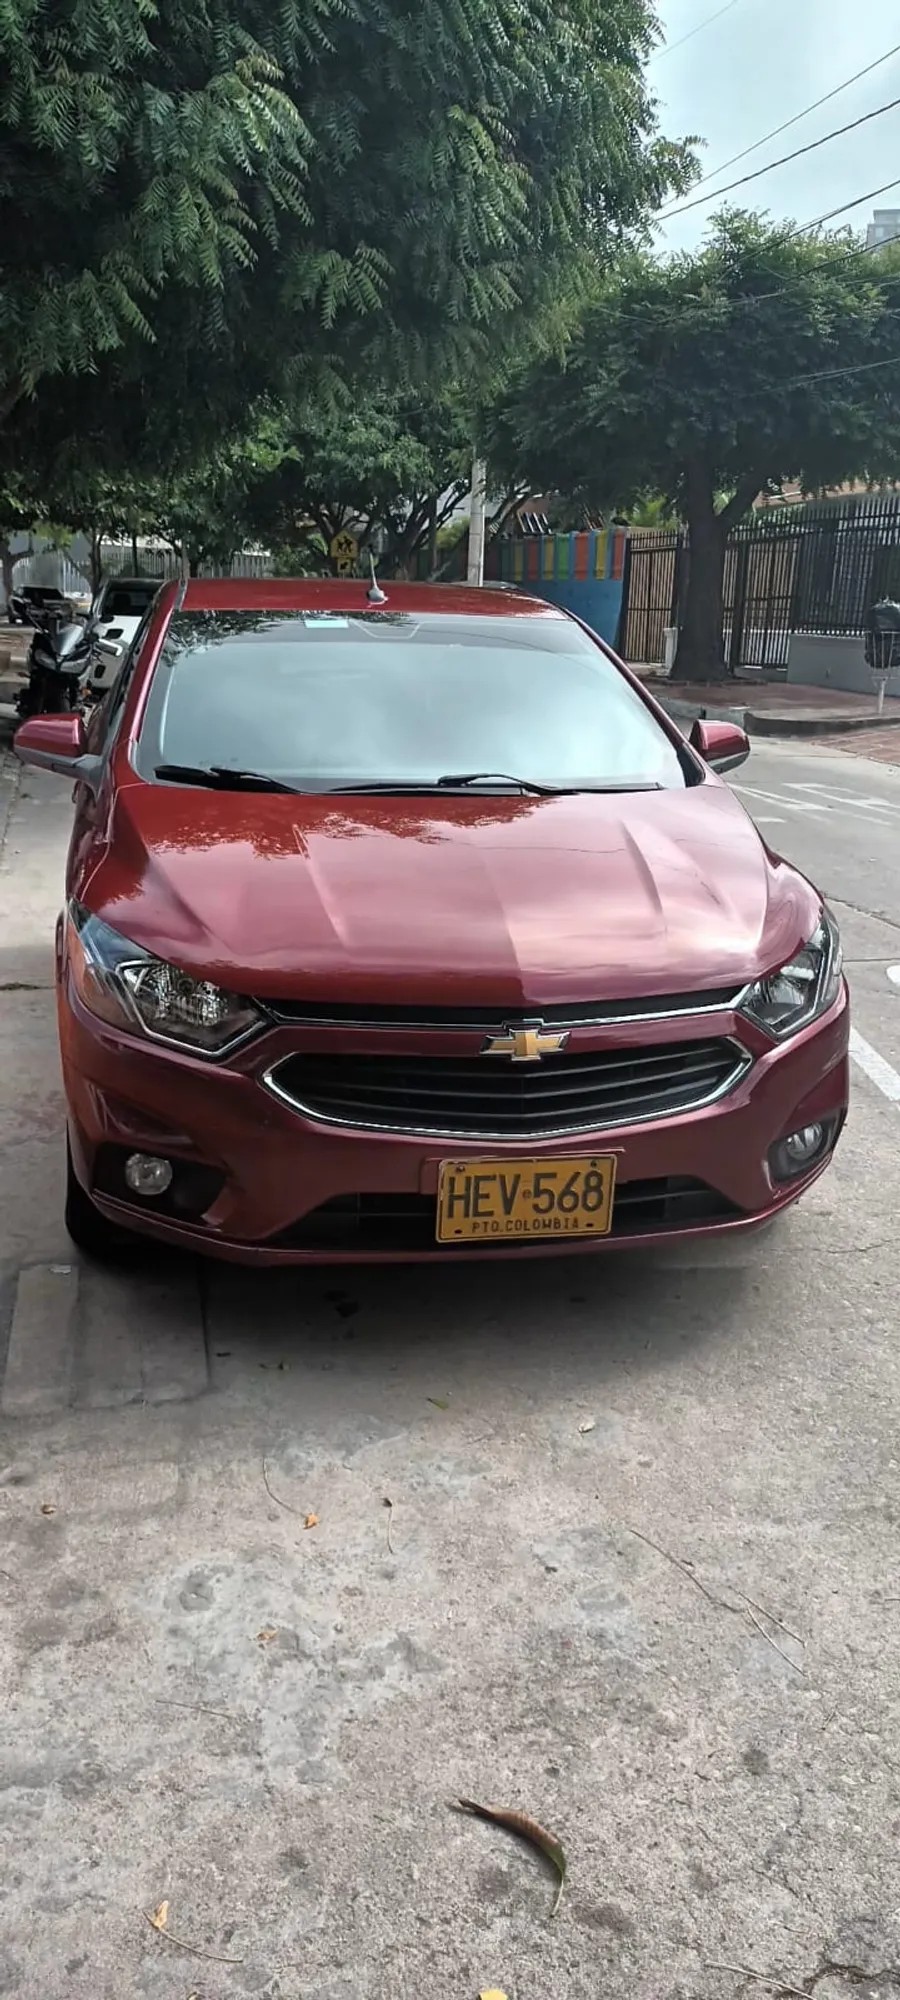 Chevrolet Onix hatchback rojo